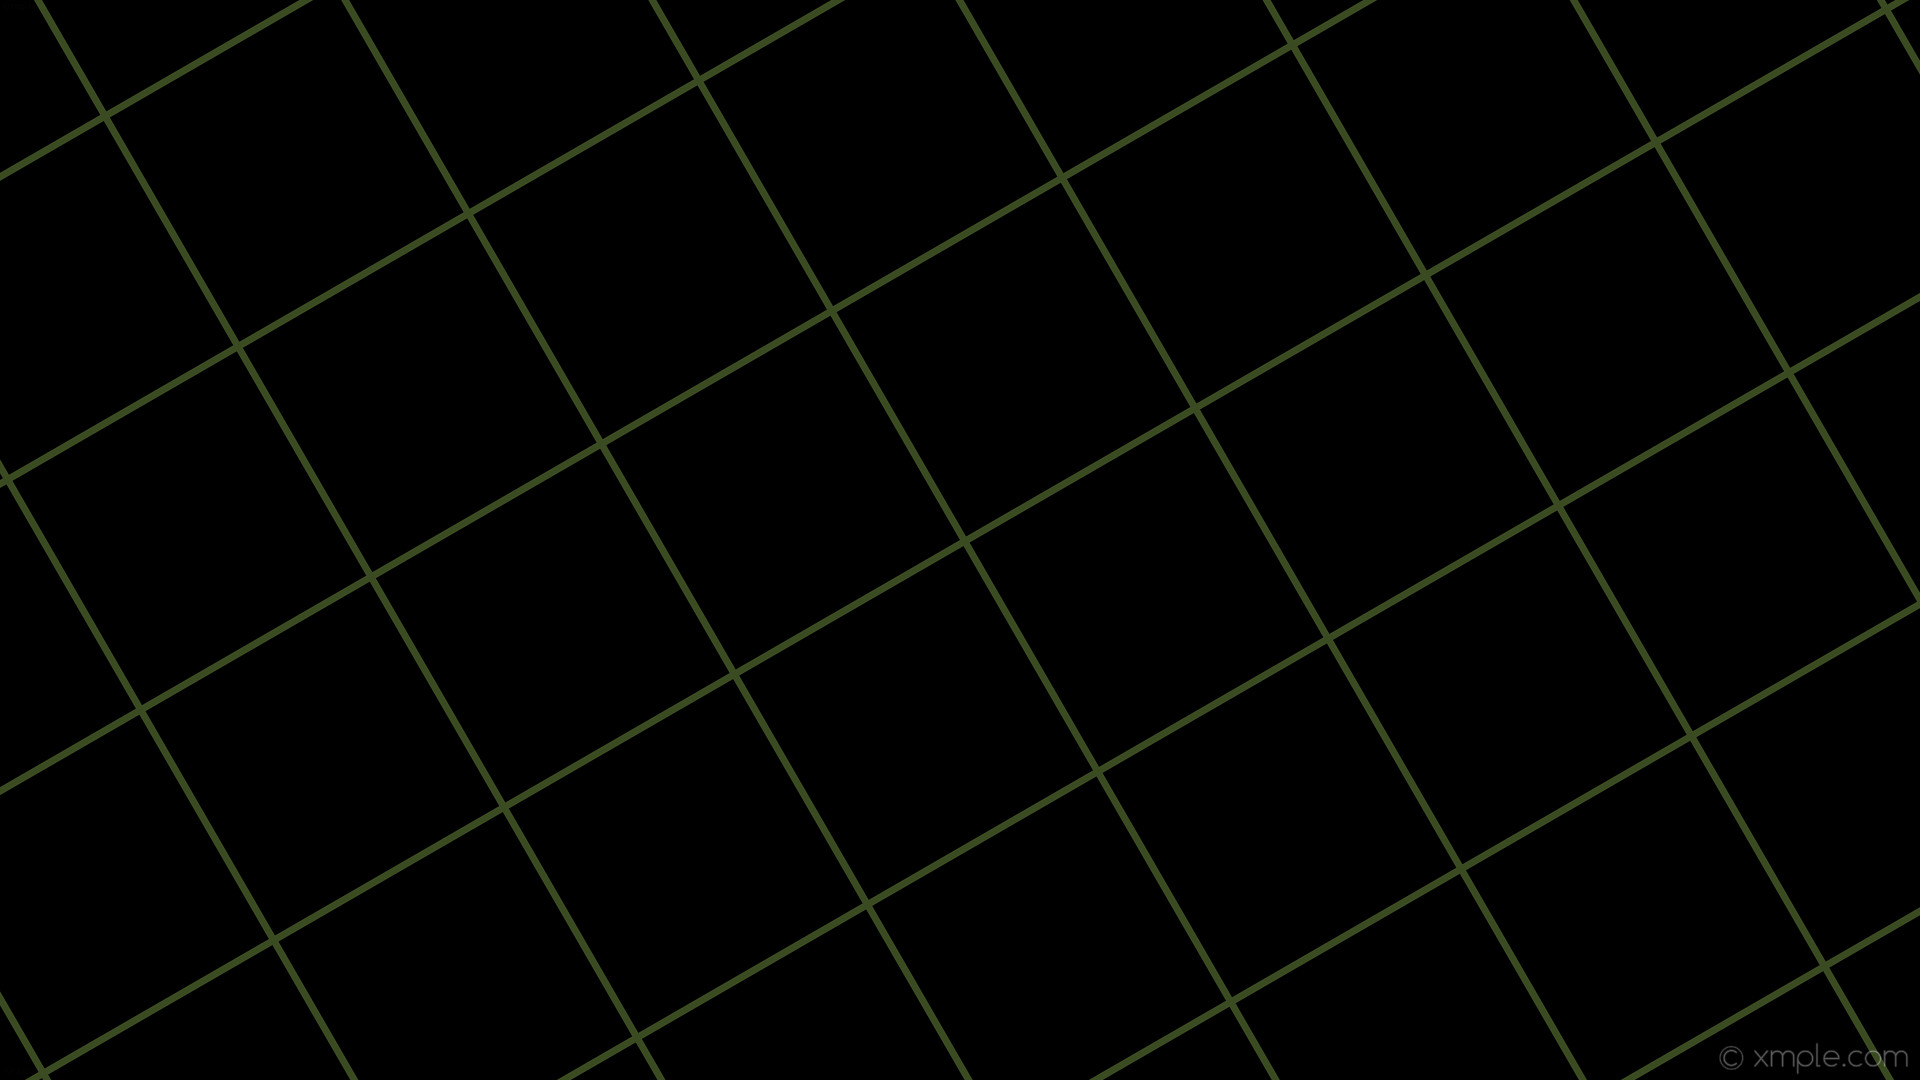 1920x1080 wallpaper graph paper green black grid dark olive green #000000 #556b2f 30Â°  7px